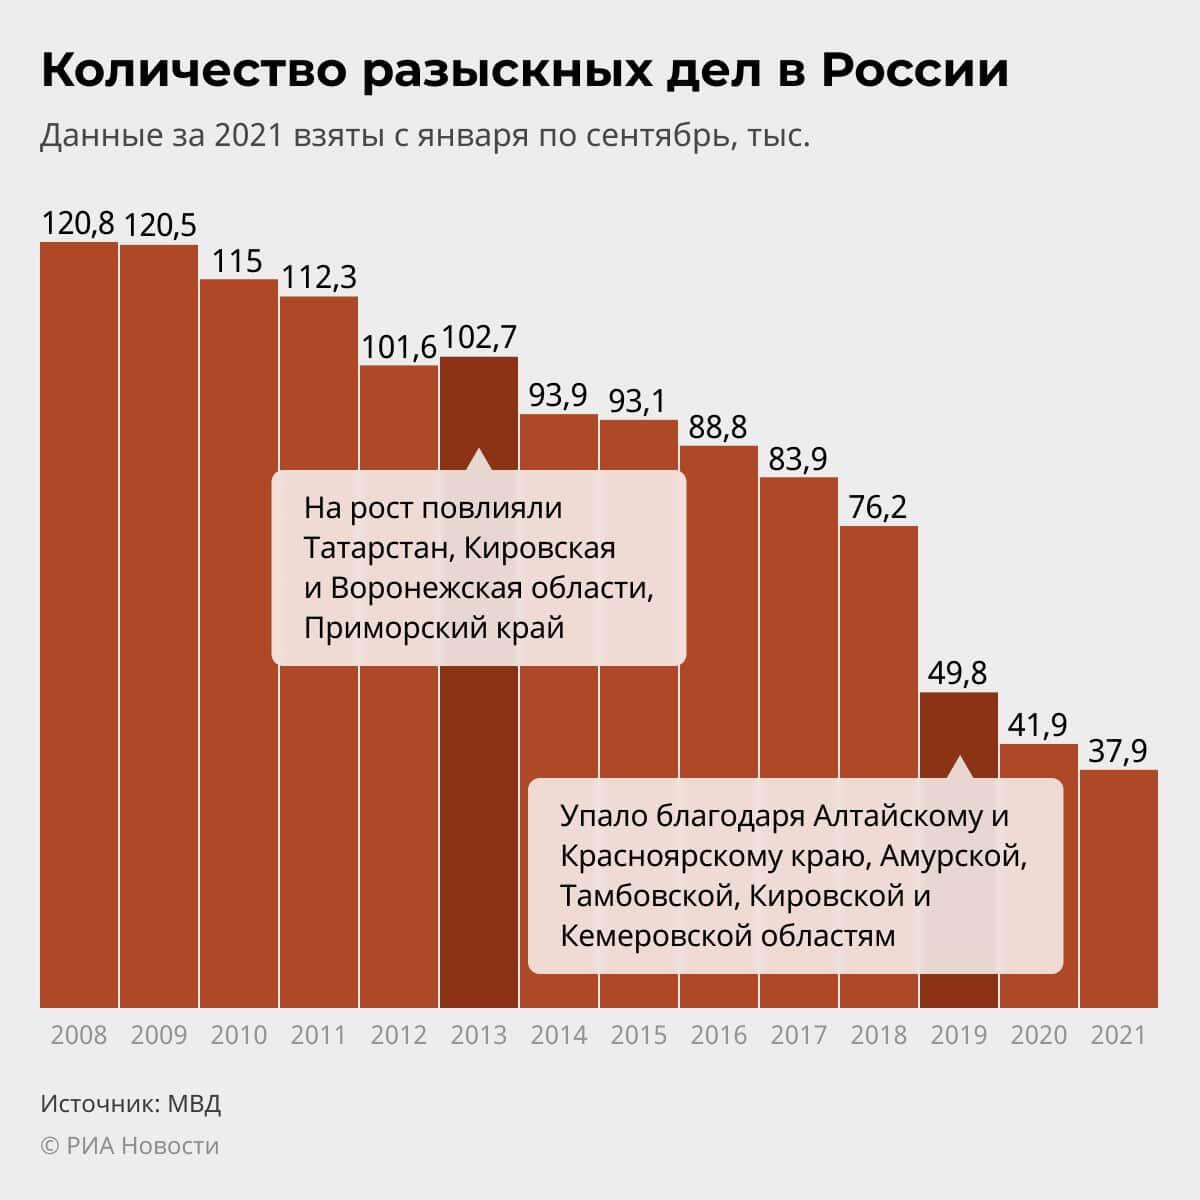 Количество разыскных дел в России